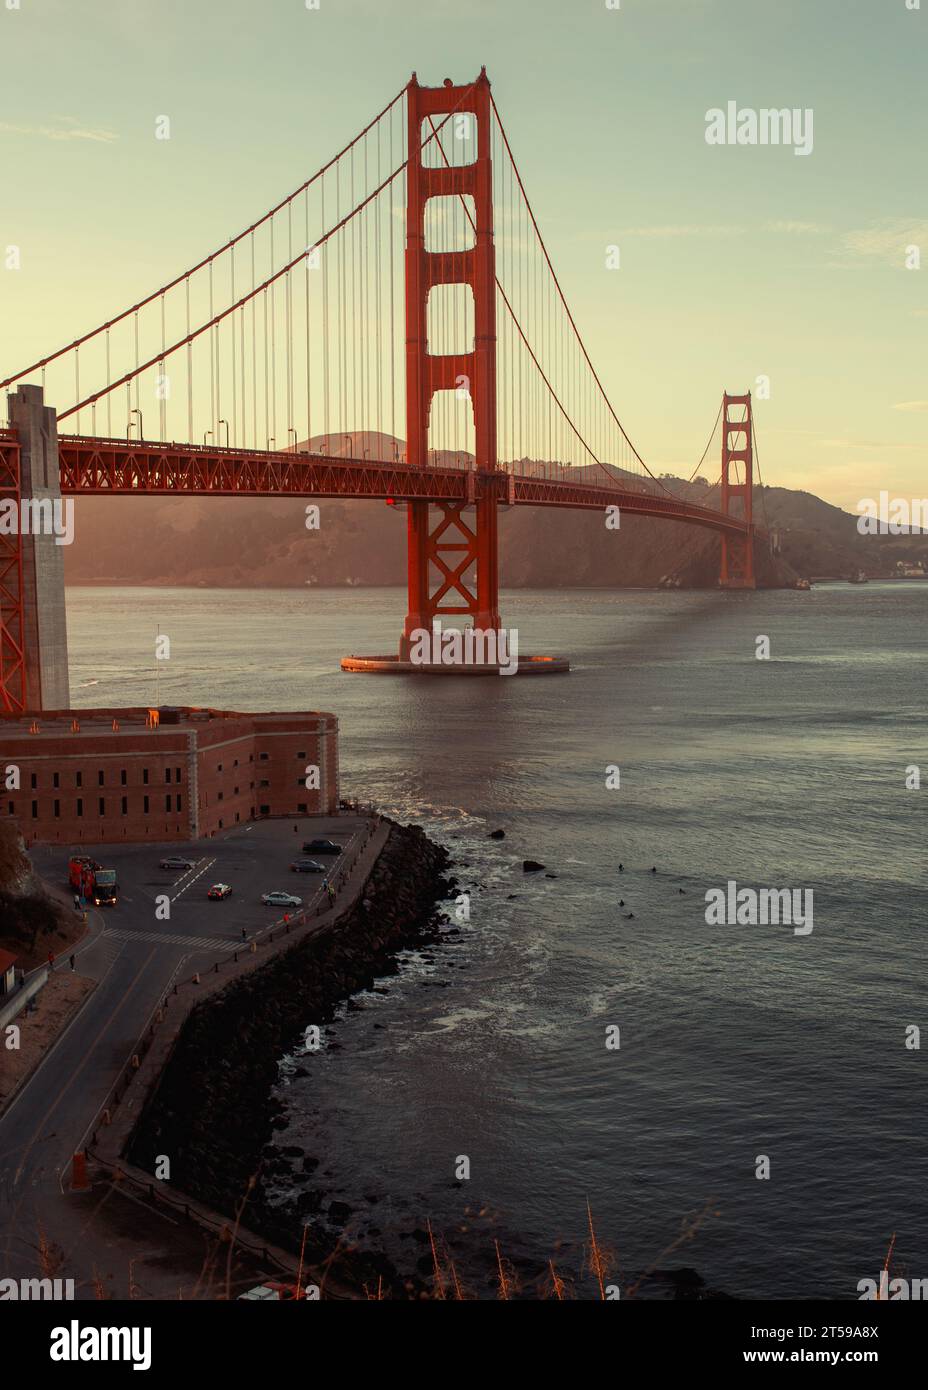 Capturez la beauté fascinante du Golden Gate Bridge, une merveille d'ingénierie qui orne la baie de San Francisco. Embrassez l'allure enchanteresse de ce b Banque D'Images